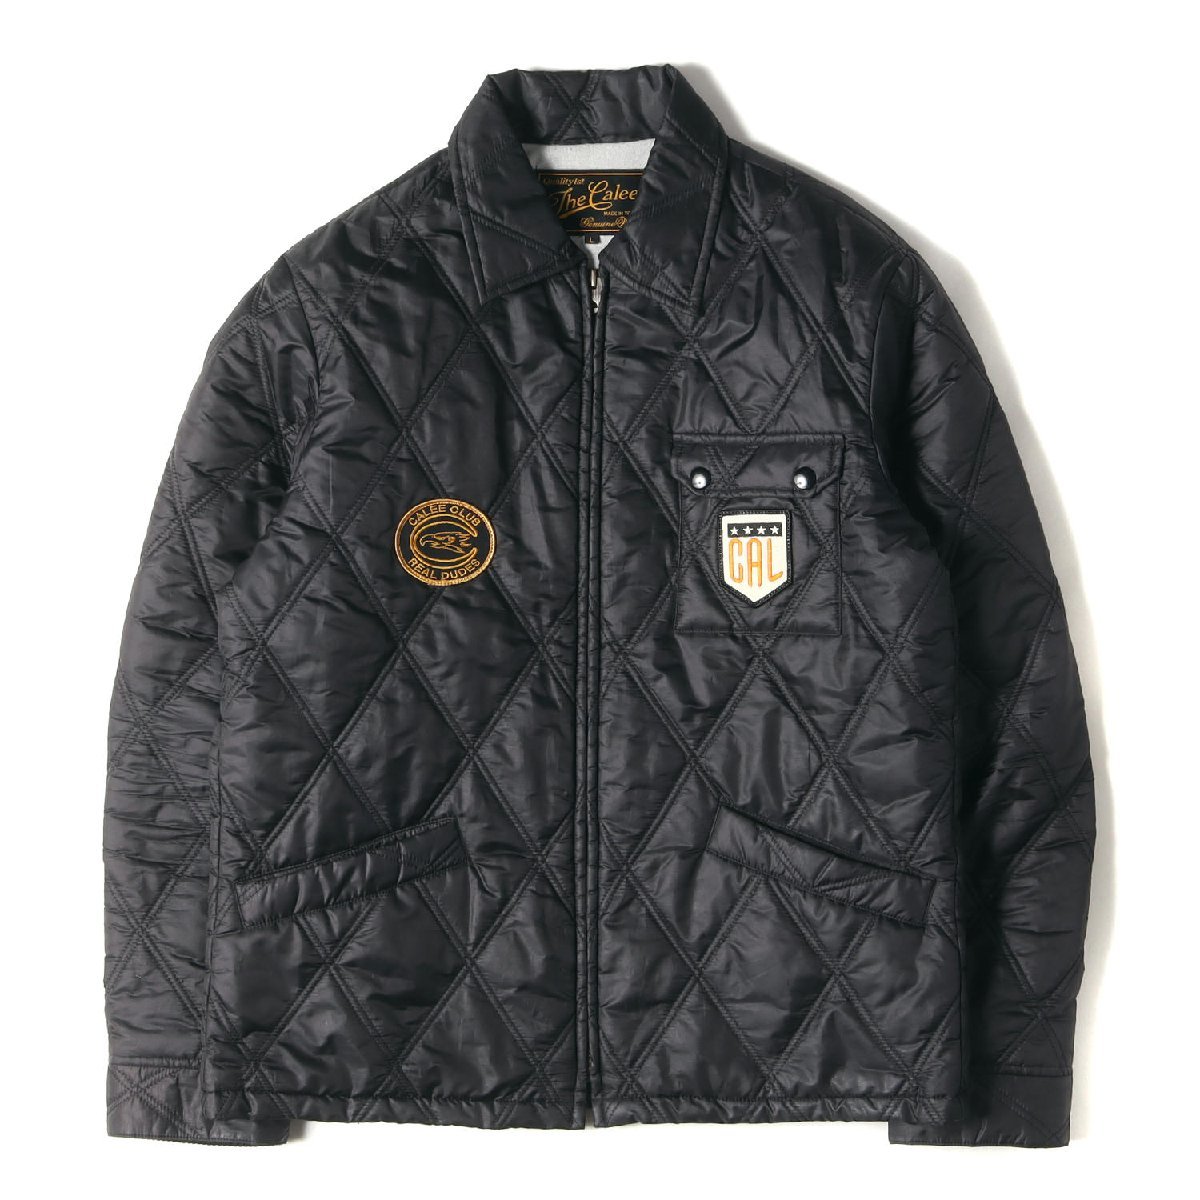 CALEE キャリー ジャケット サイズ:L ワッペン付き キルティング ジャケット ブラック 黒 アウター ブルゾン コート ブランド